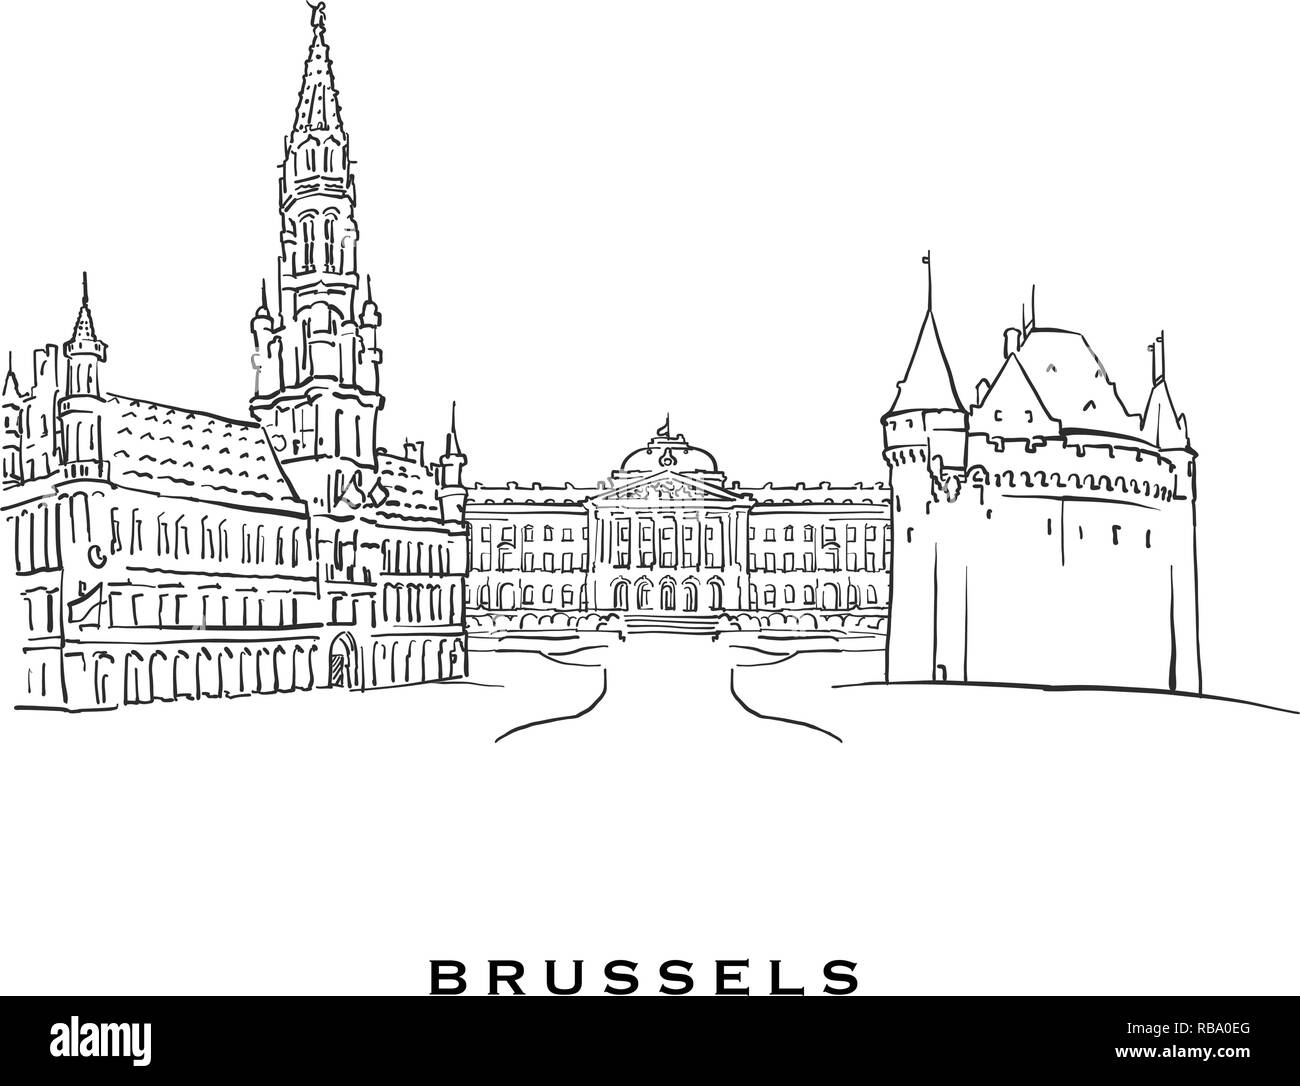 Brüssel Belgien berühmte Architektur. Vektor Skizze auf weißem Hintergrund getrennt aufgeführt. Architektur Zeichnungen von allen europäischen Hauptstädten. Stock Vektor